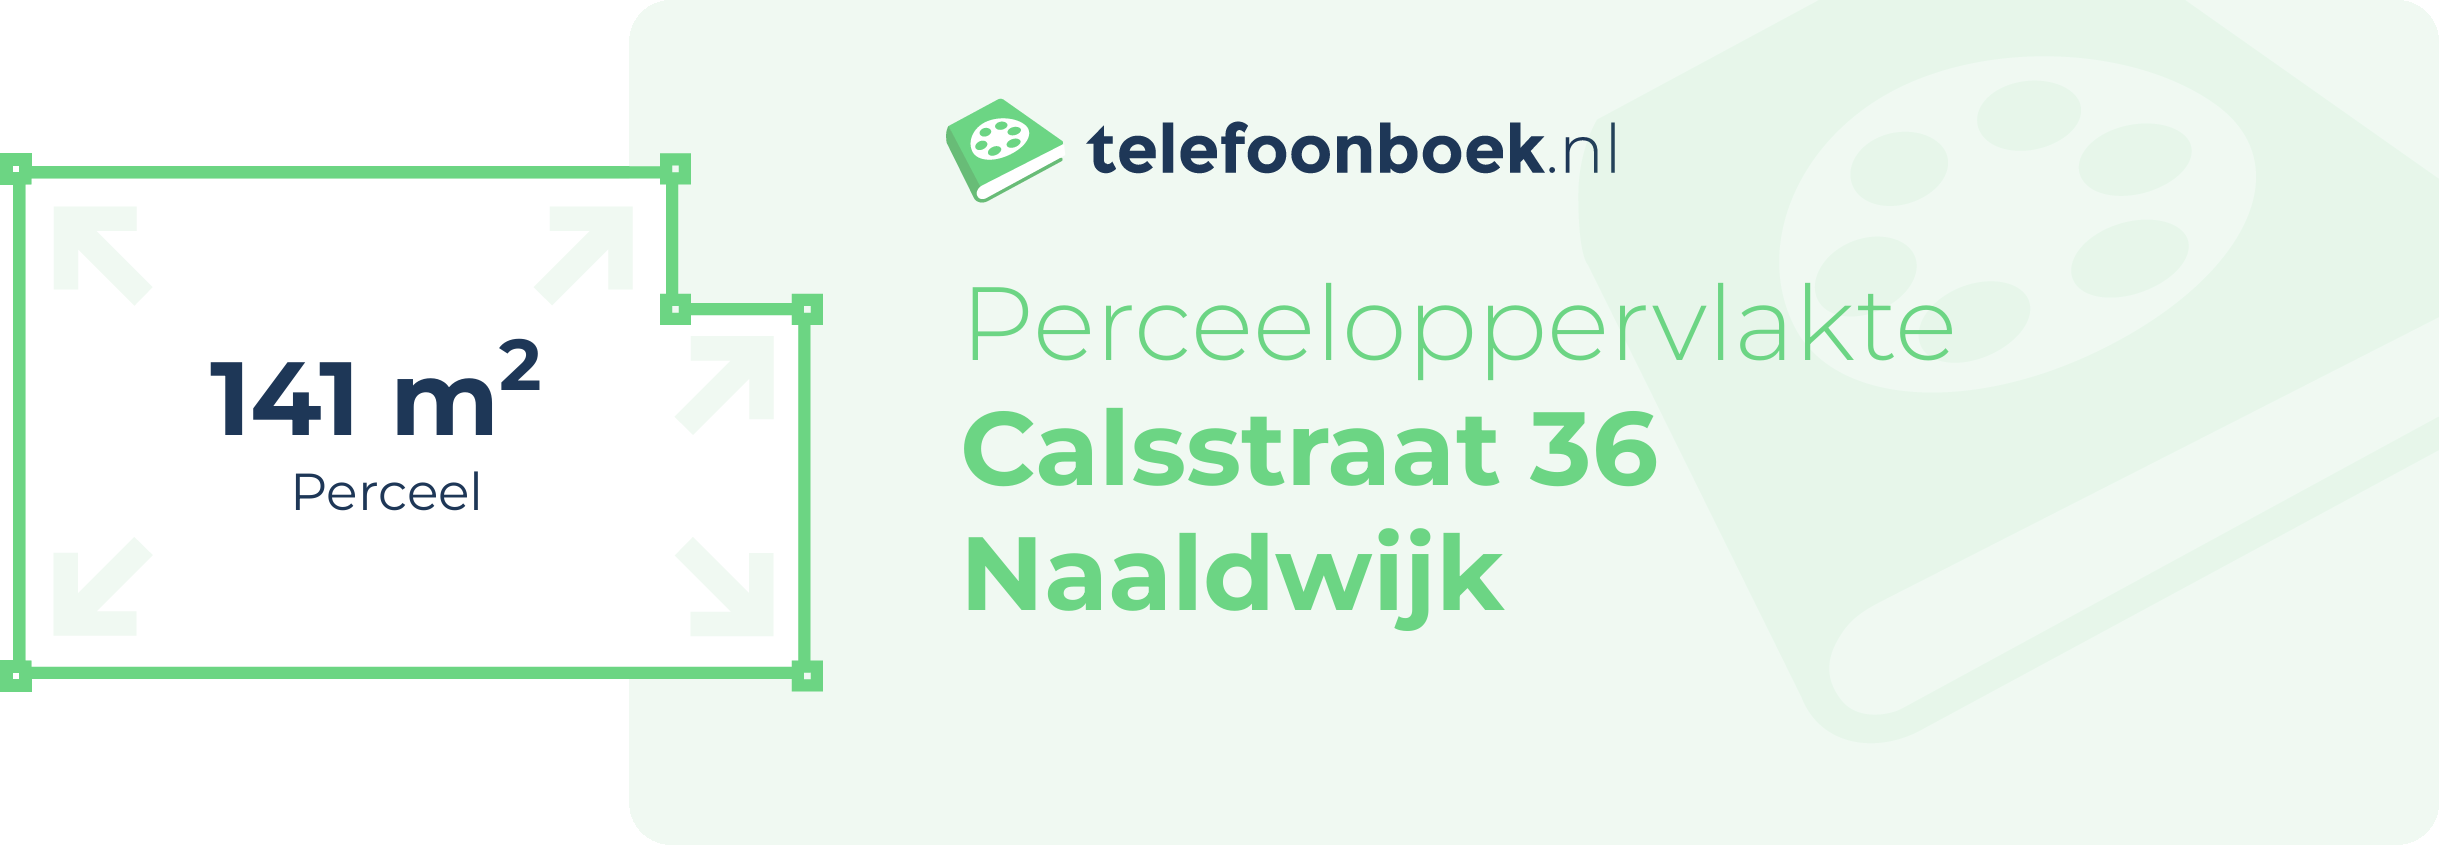 Perceeloppervlakte Calsstraat 36 Naaldwijk